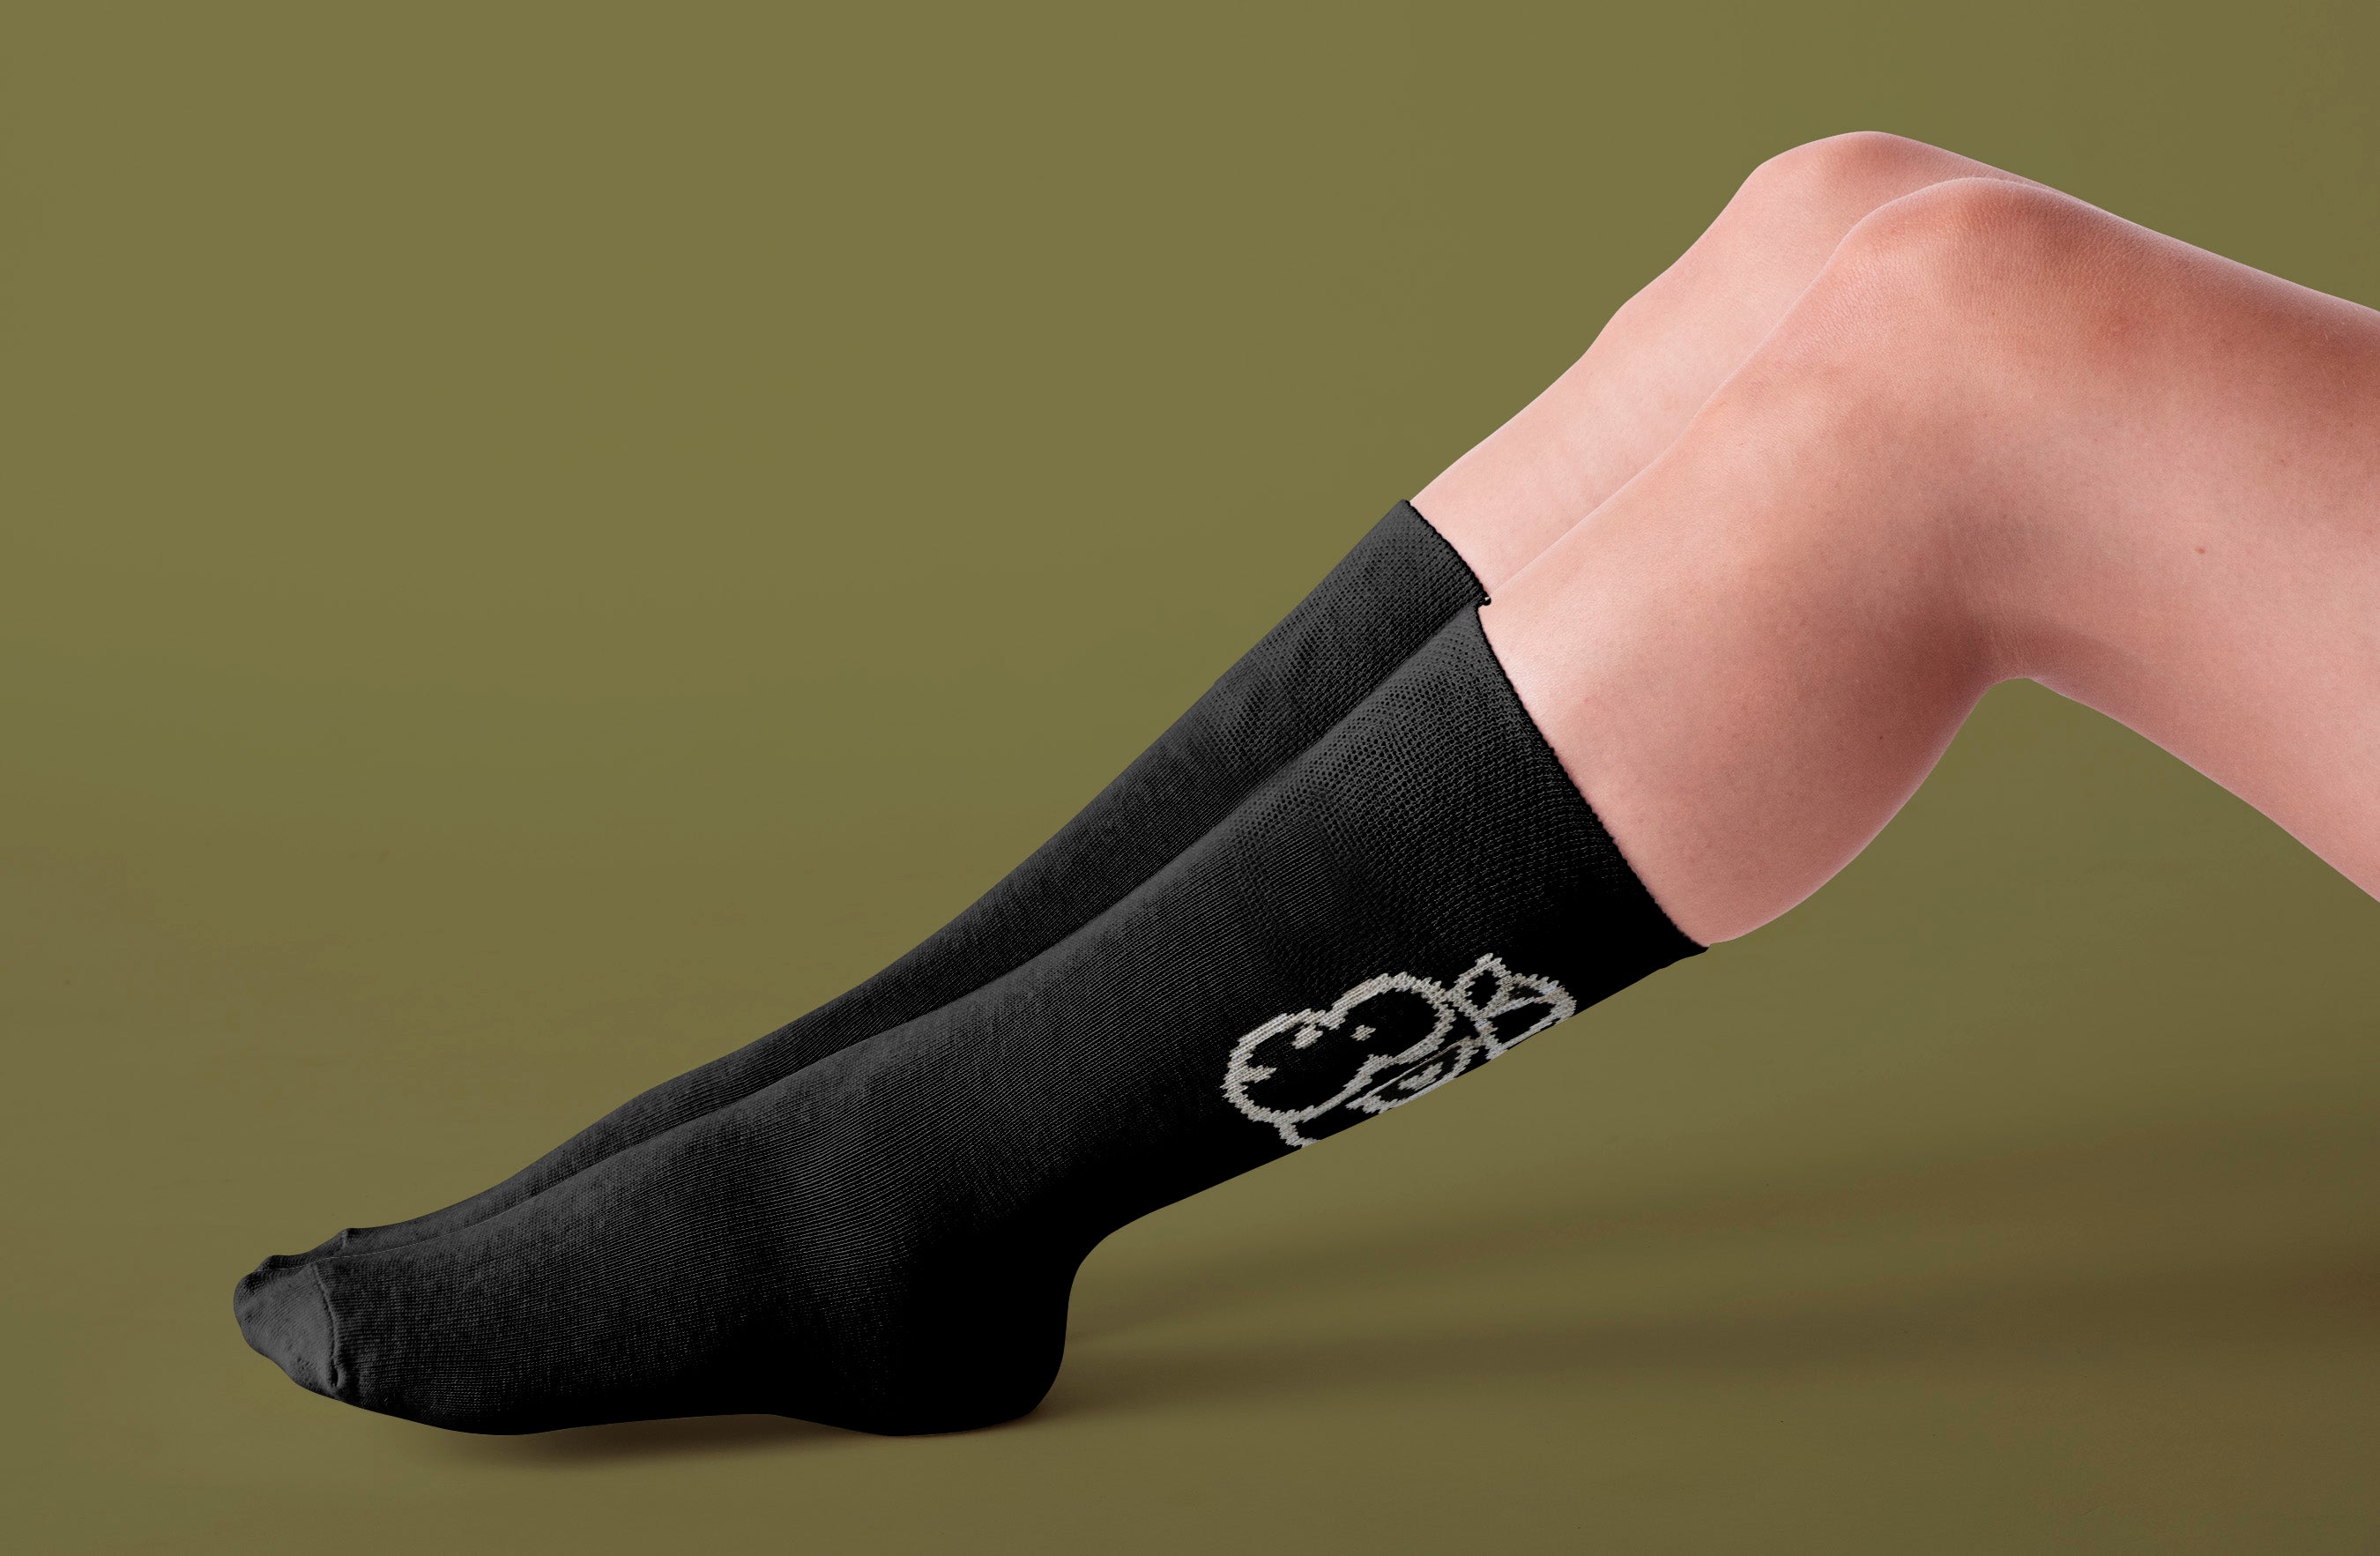 Chimpeur Merino Wool Winter Socks (Black)